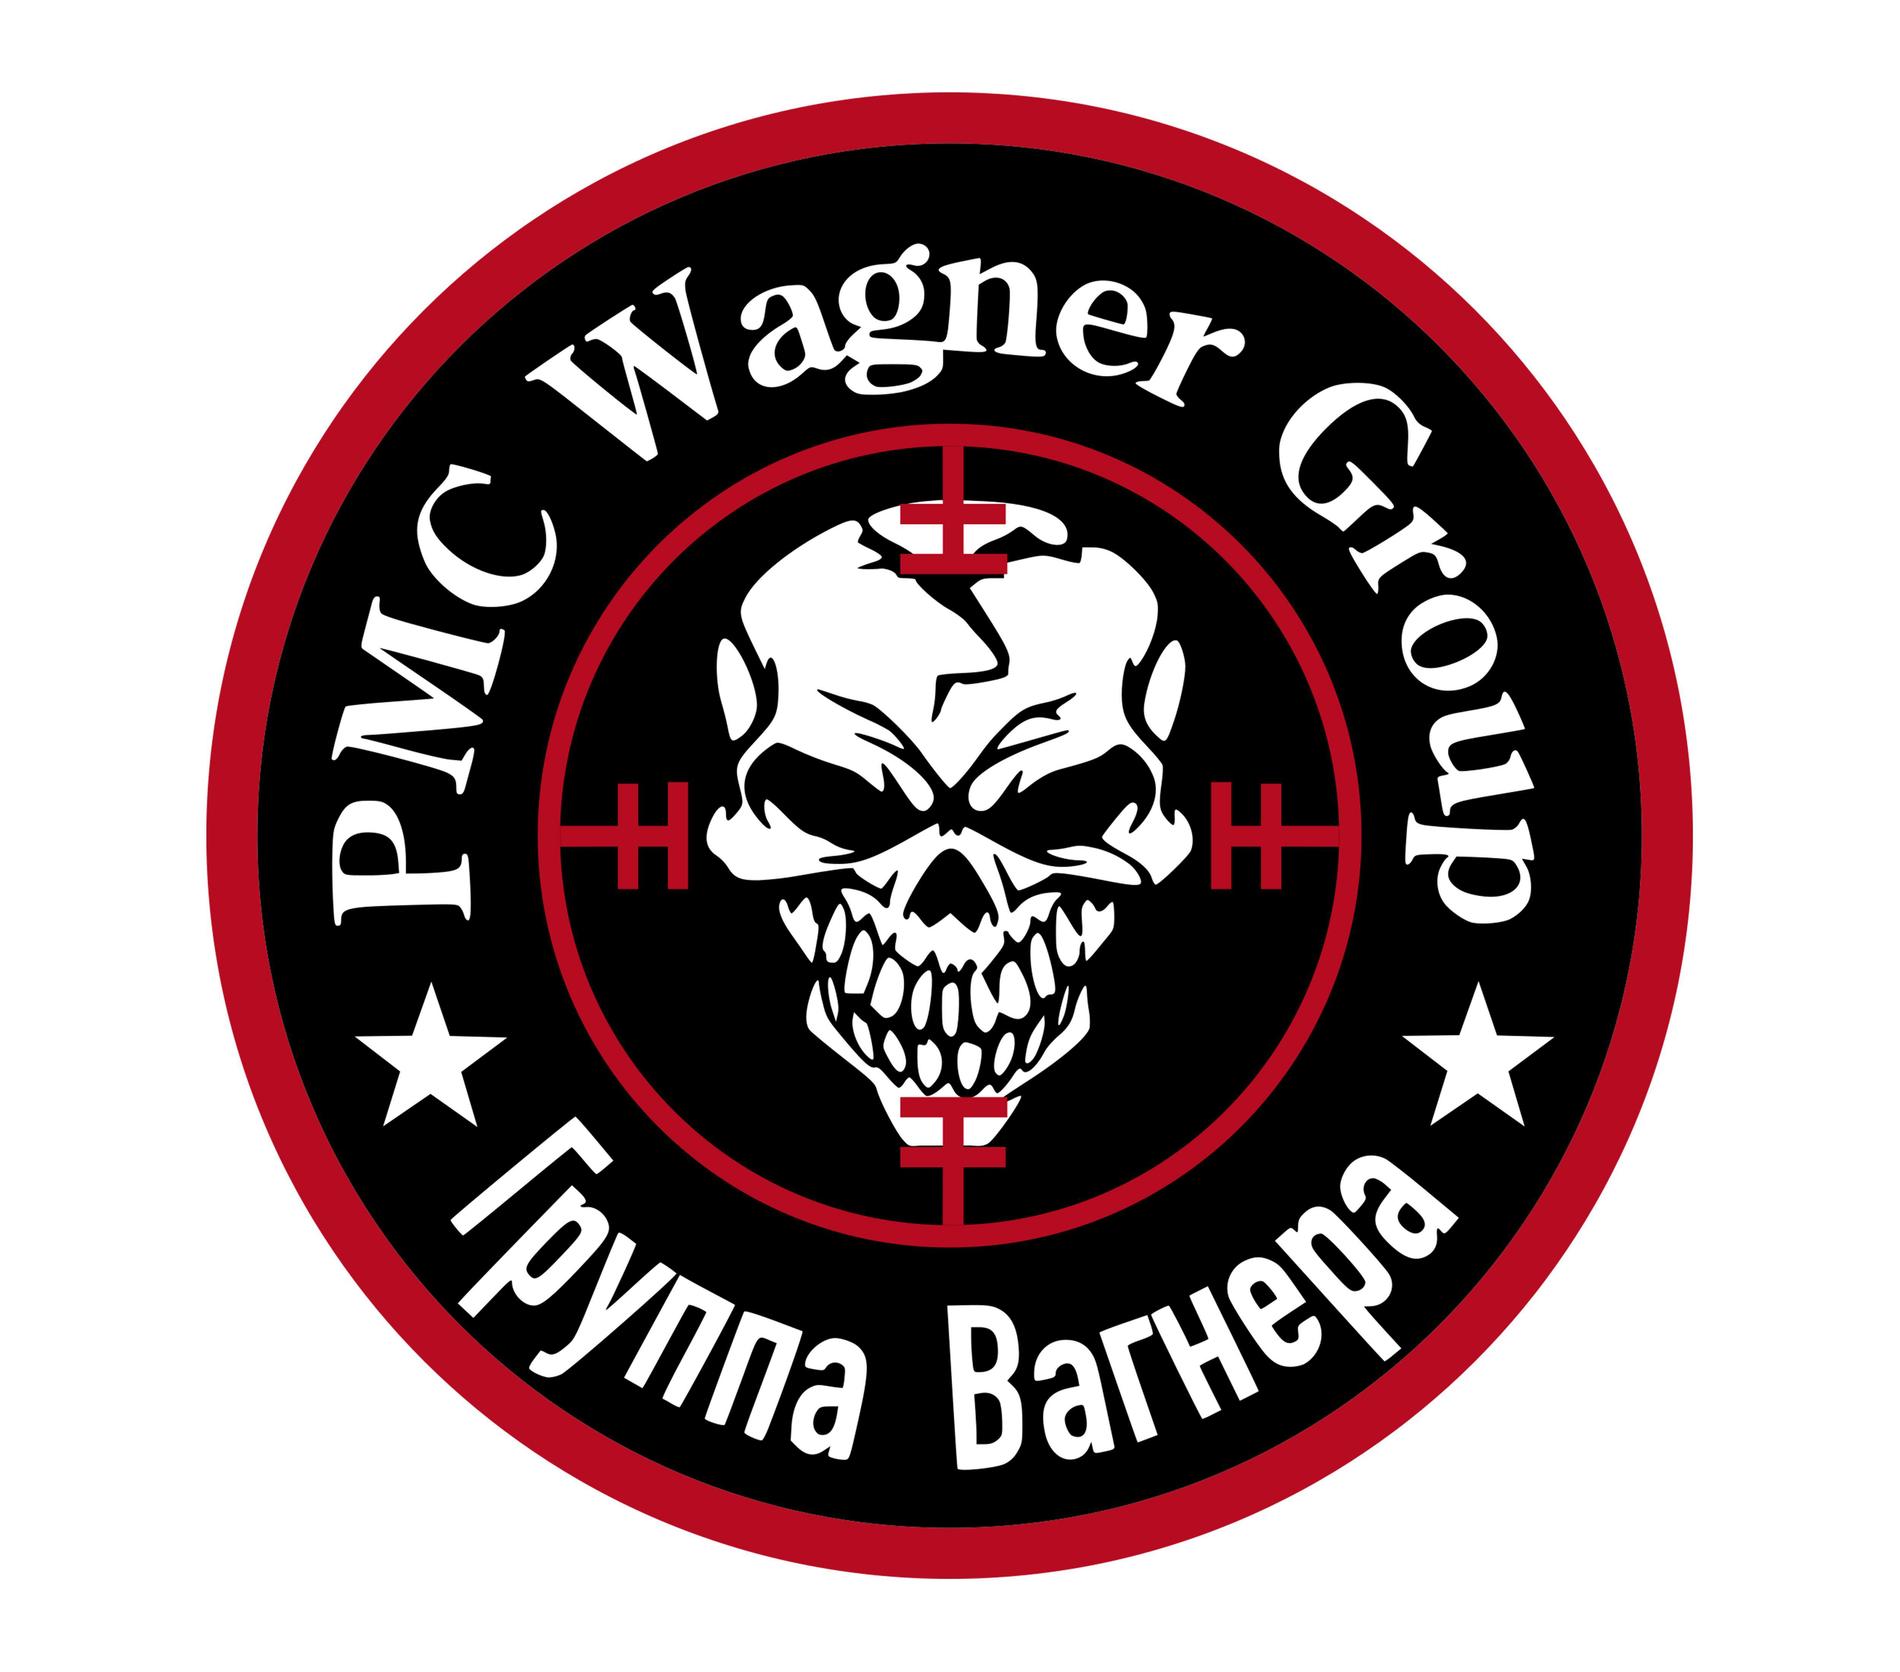 Wagnergruppens emblem.